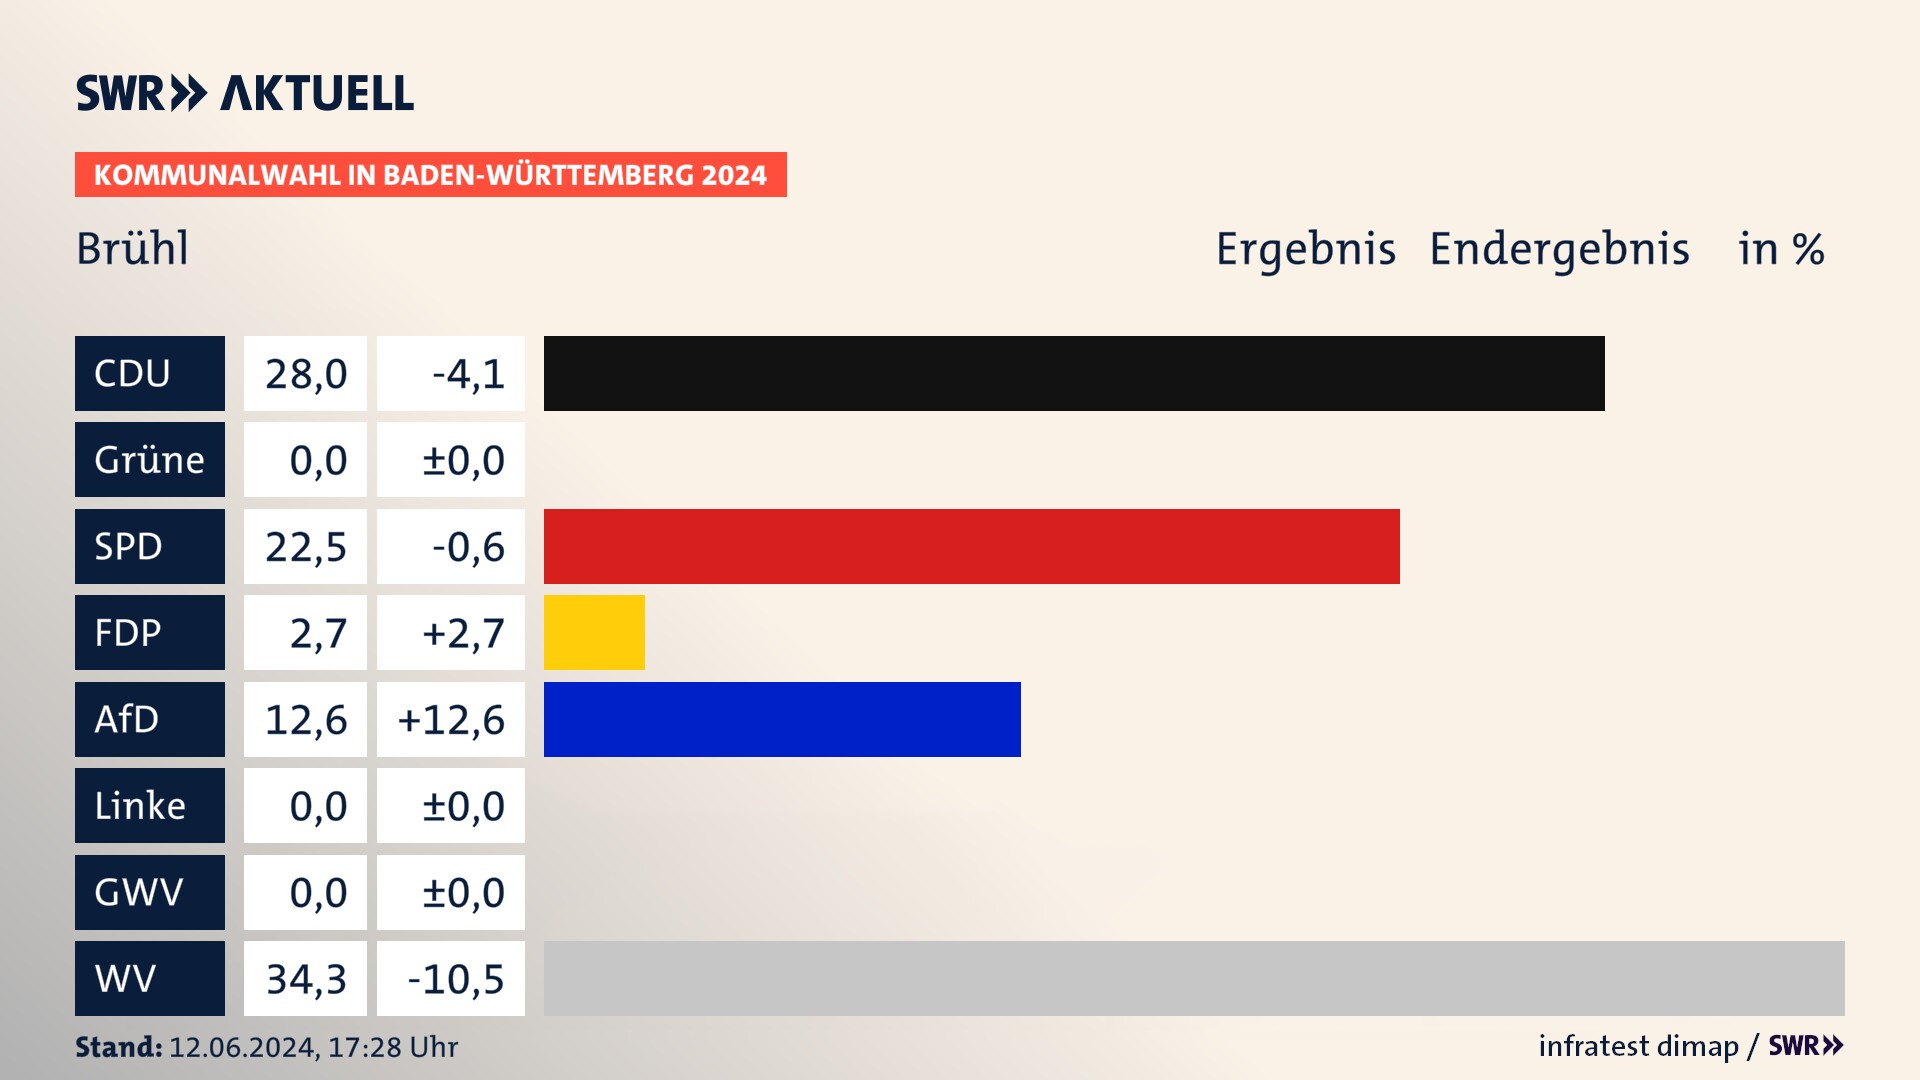 Kommunalwahl 2024 Endergebnis Zweitstimme für Brühl. In Brühl erzielt die CDU 28,0 Prozent der gültigen  Stimmen. Die SPD landet bei 22,5 Prozent. Die FDP erreicht 2,7 Prozent. Die AfD kommt auf 12,6 Prozent. Die Wählervereinigungen landen bei 34,3 Prozent.